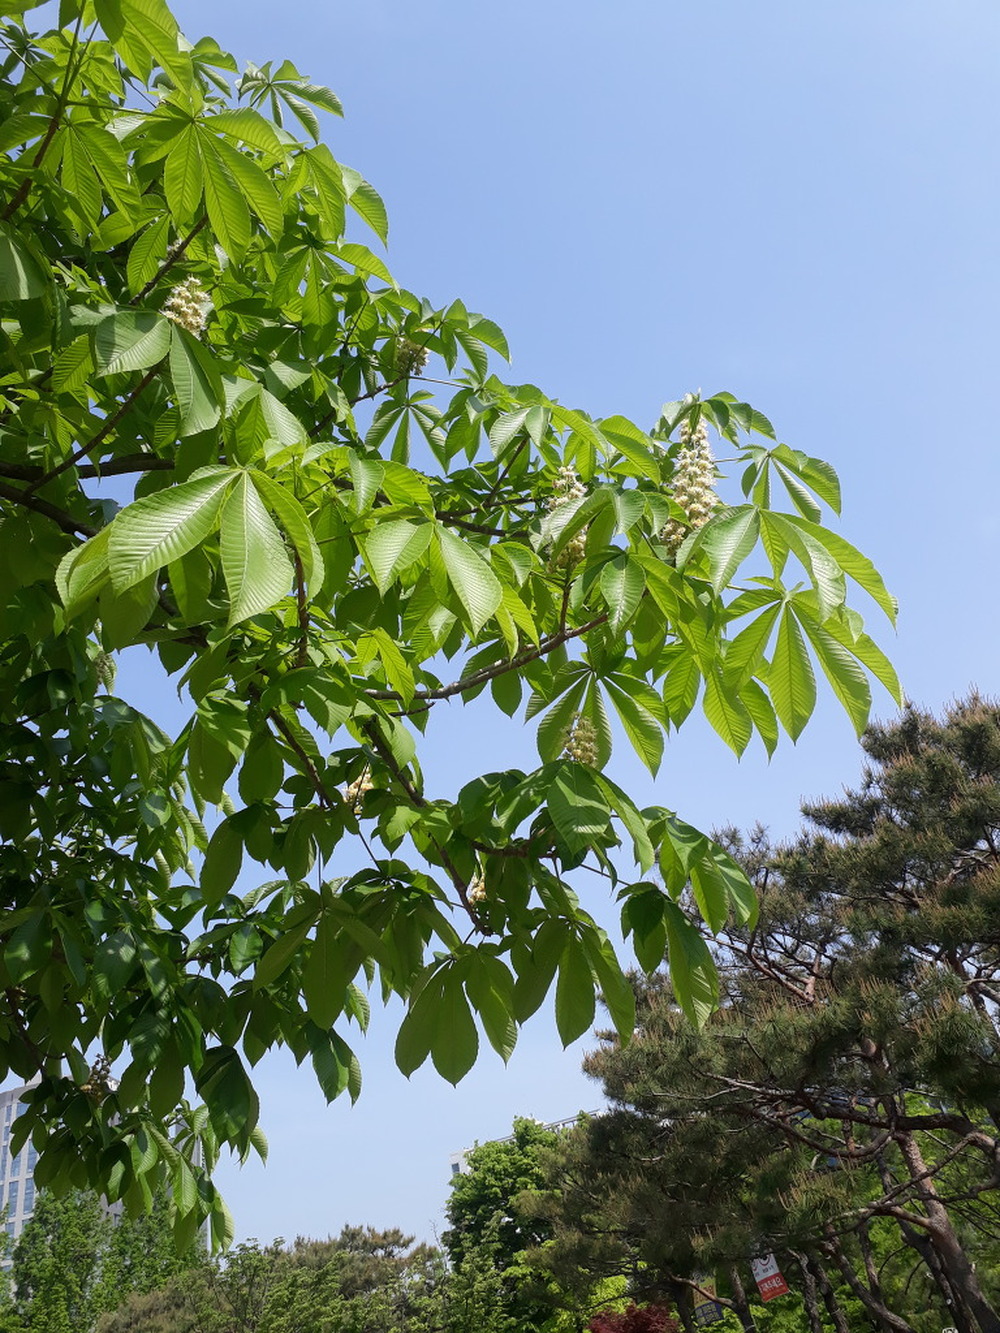 칠엽수(마로니에나무)